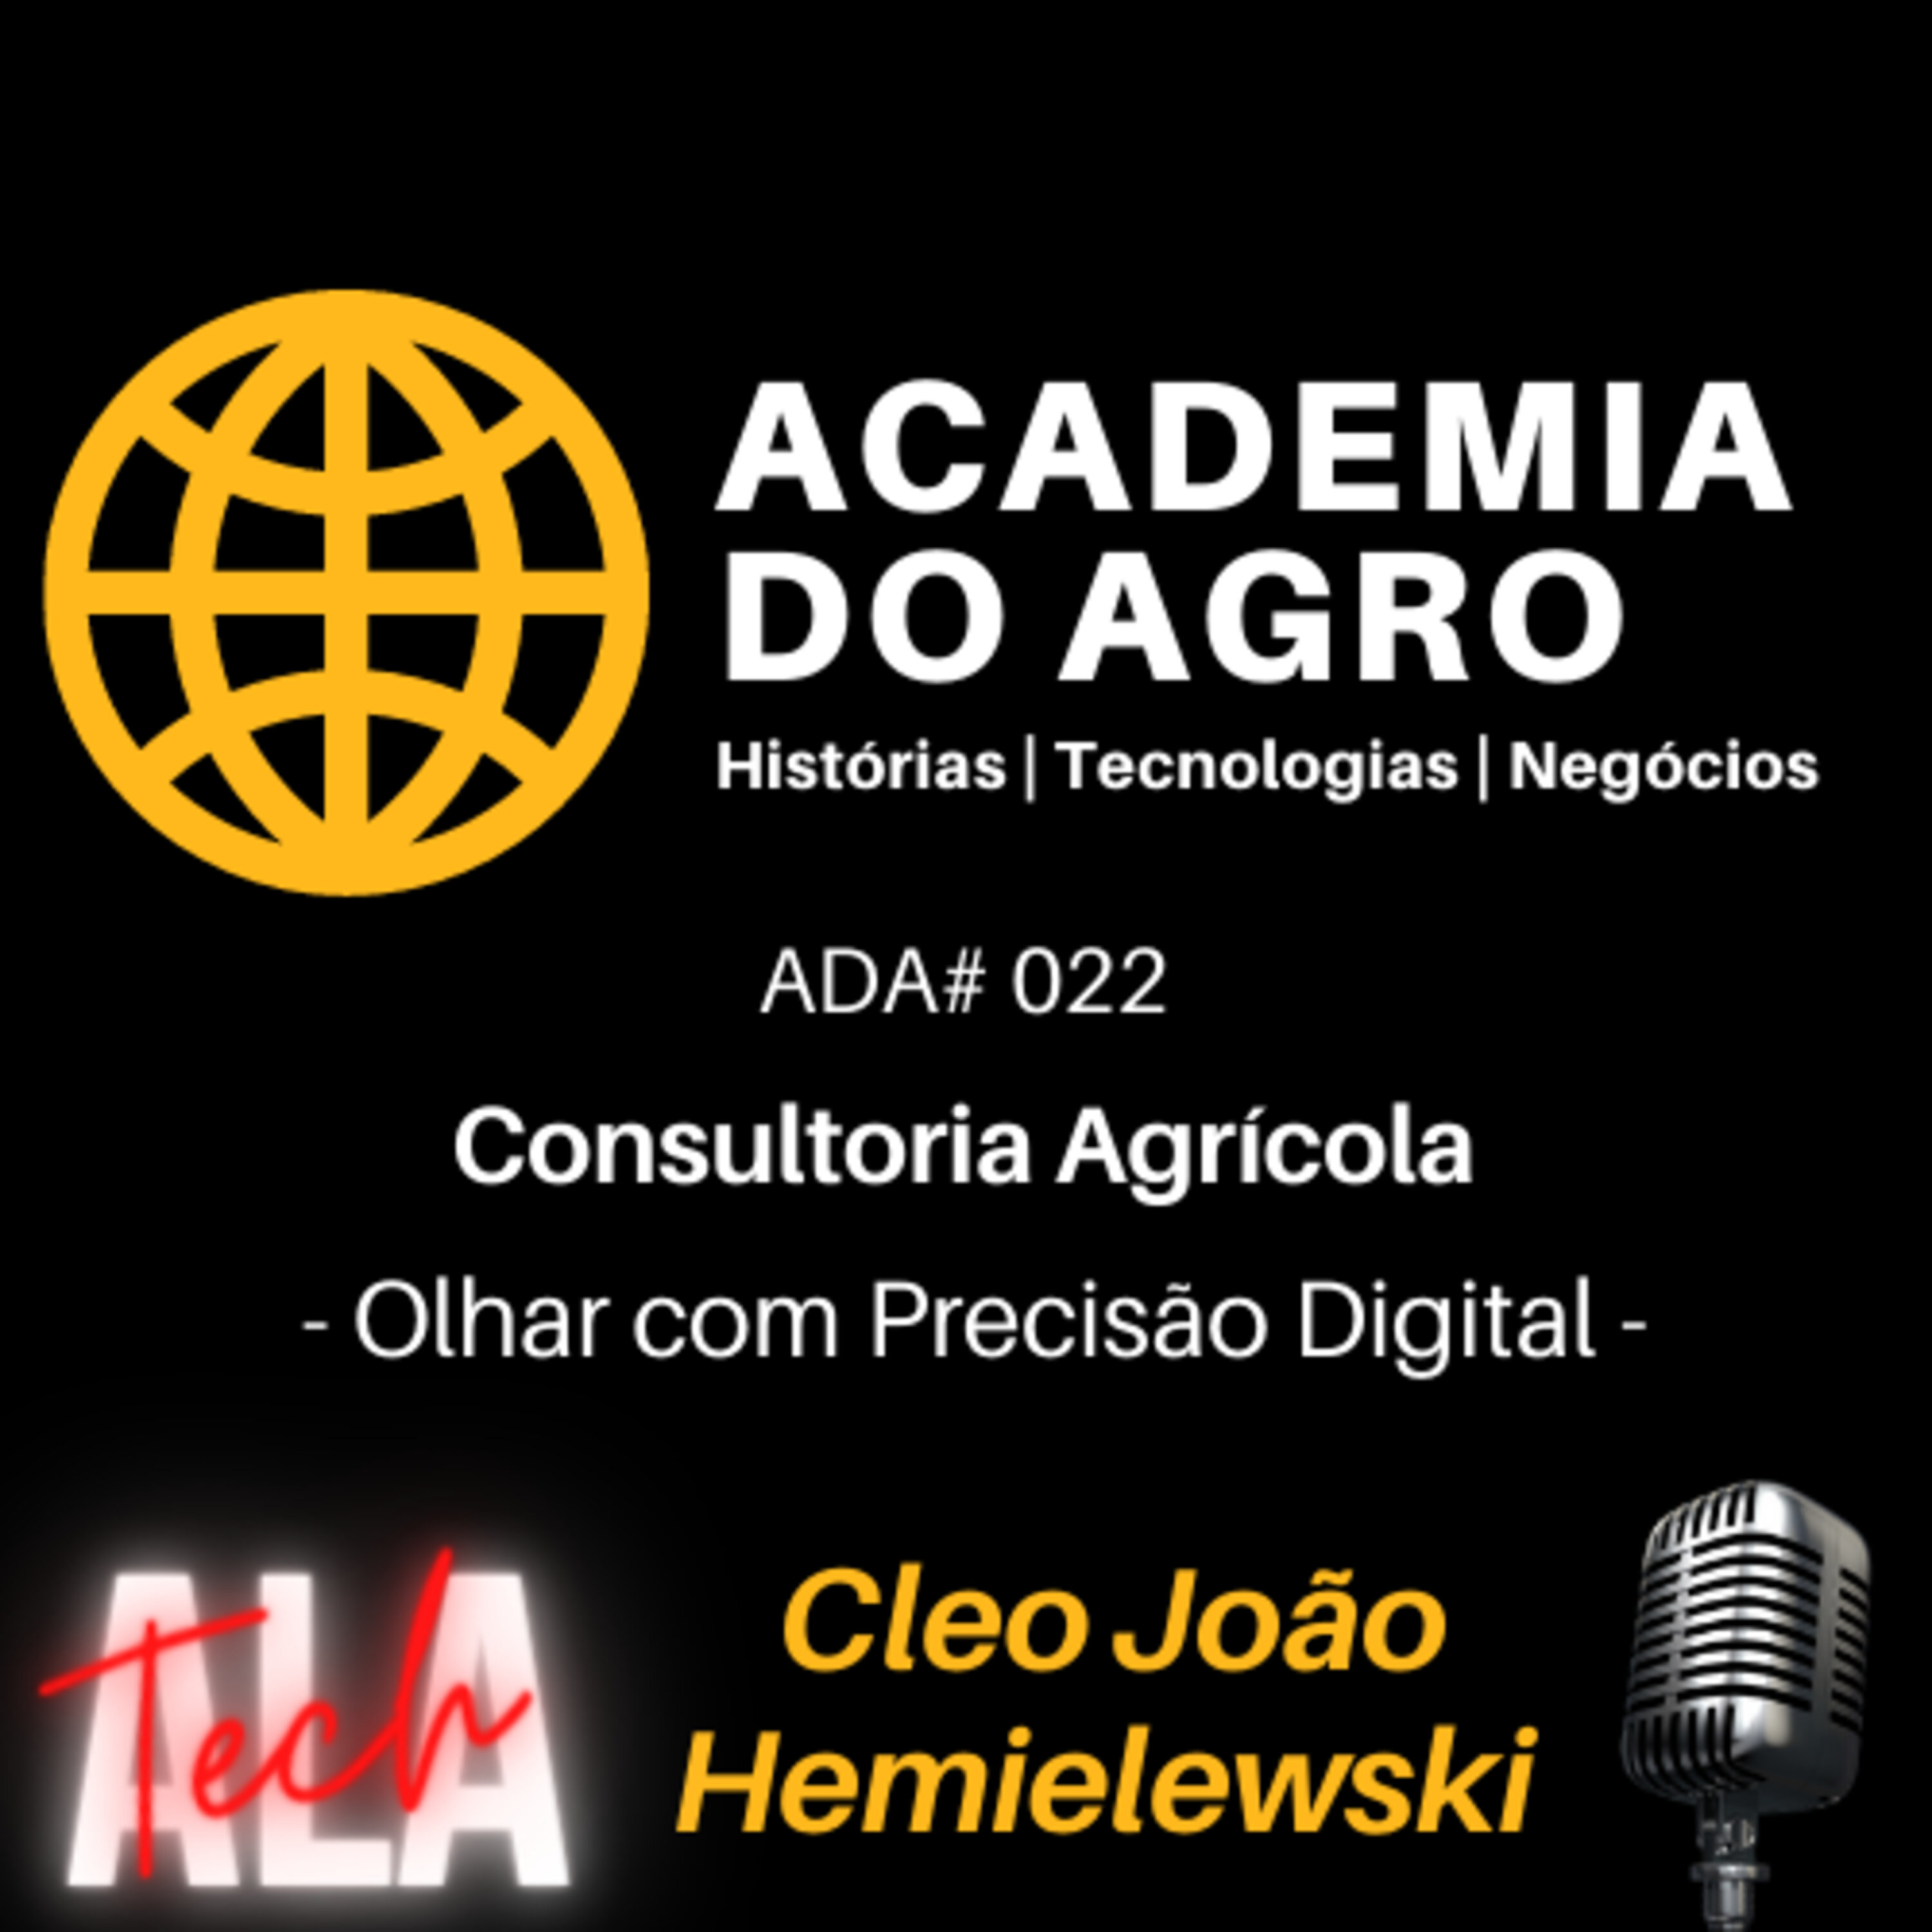 Consultoria Agrícola - Olhar com Precisão Digital!